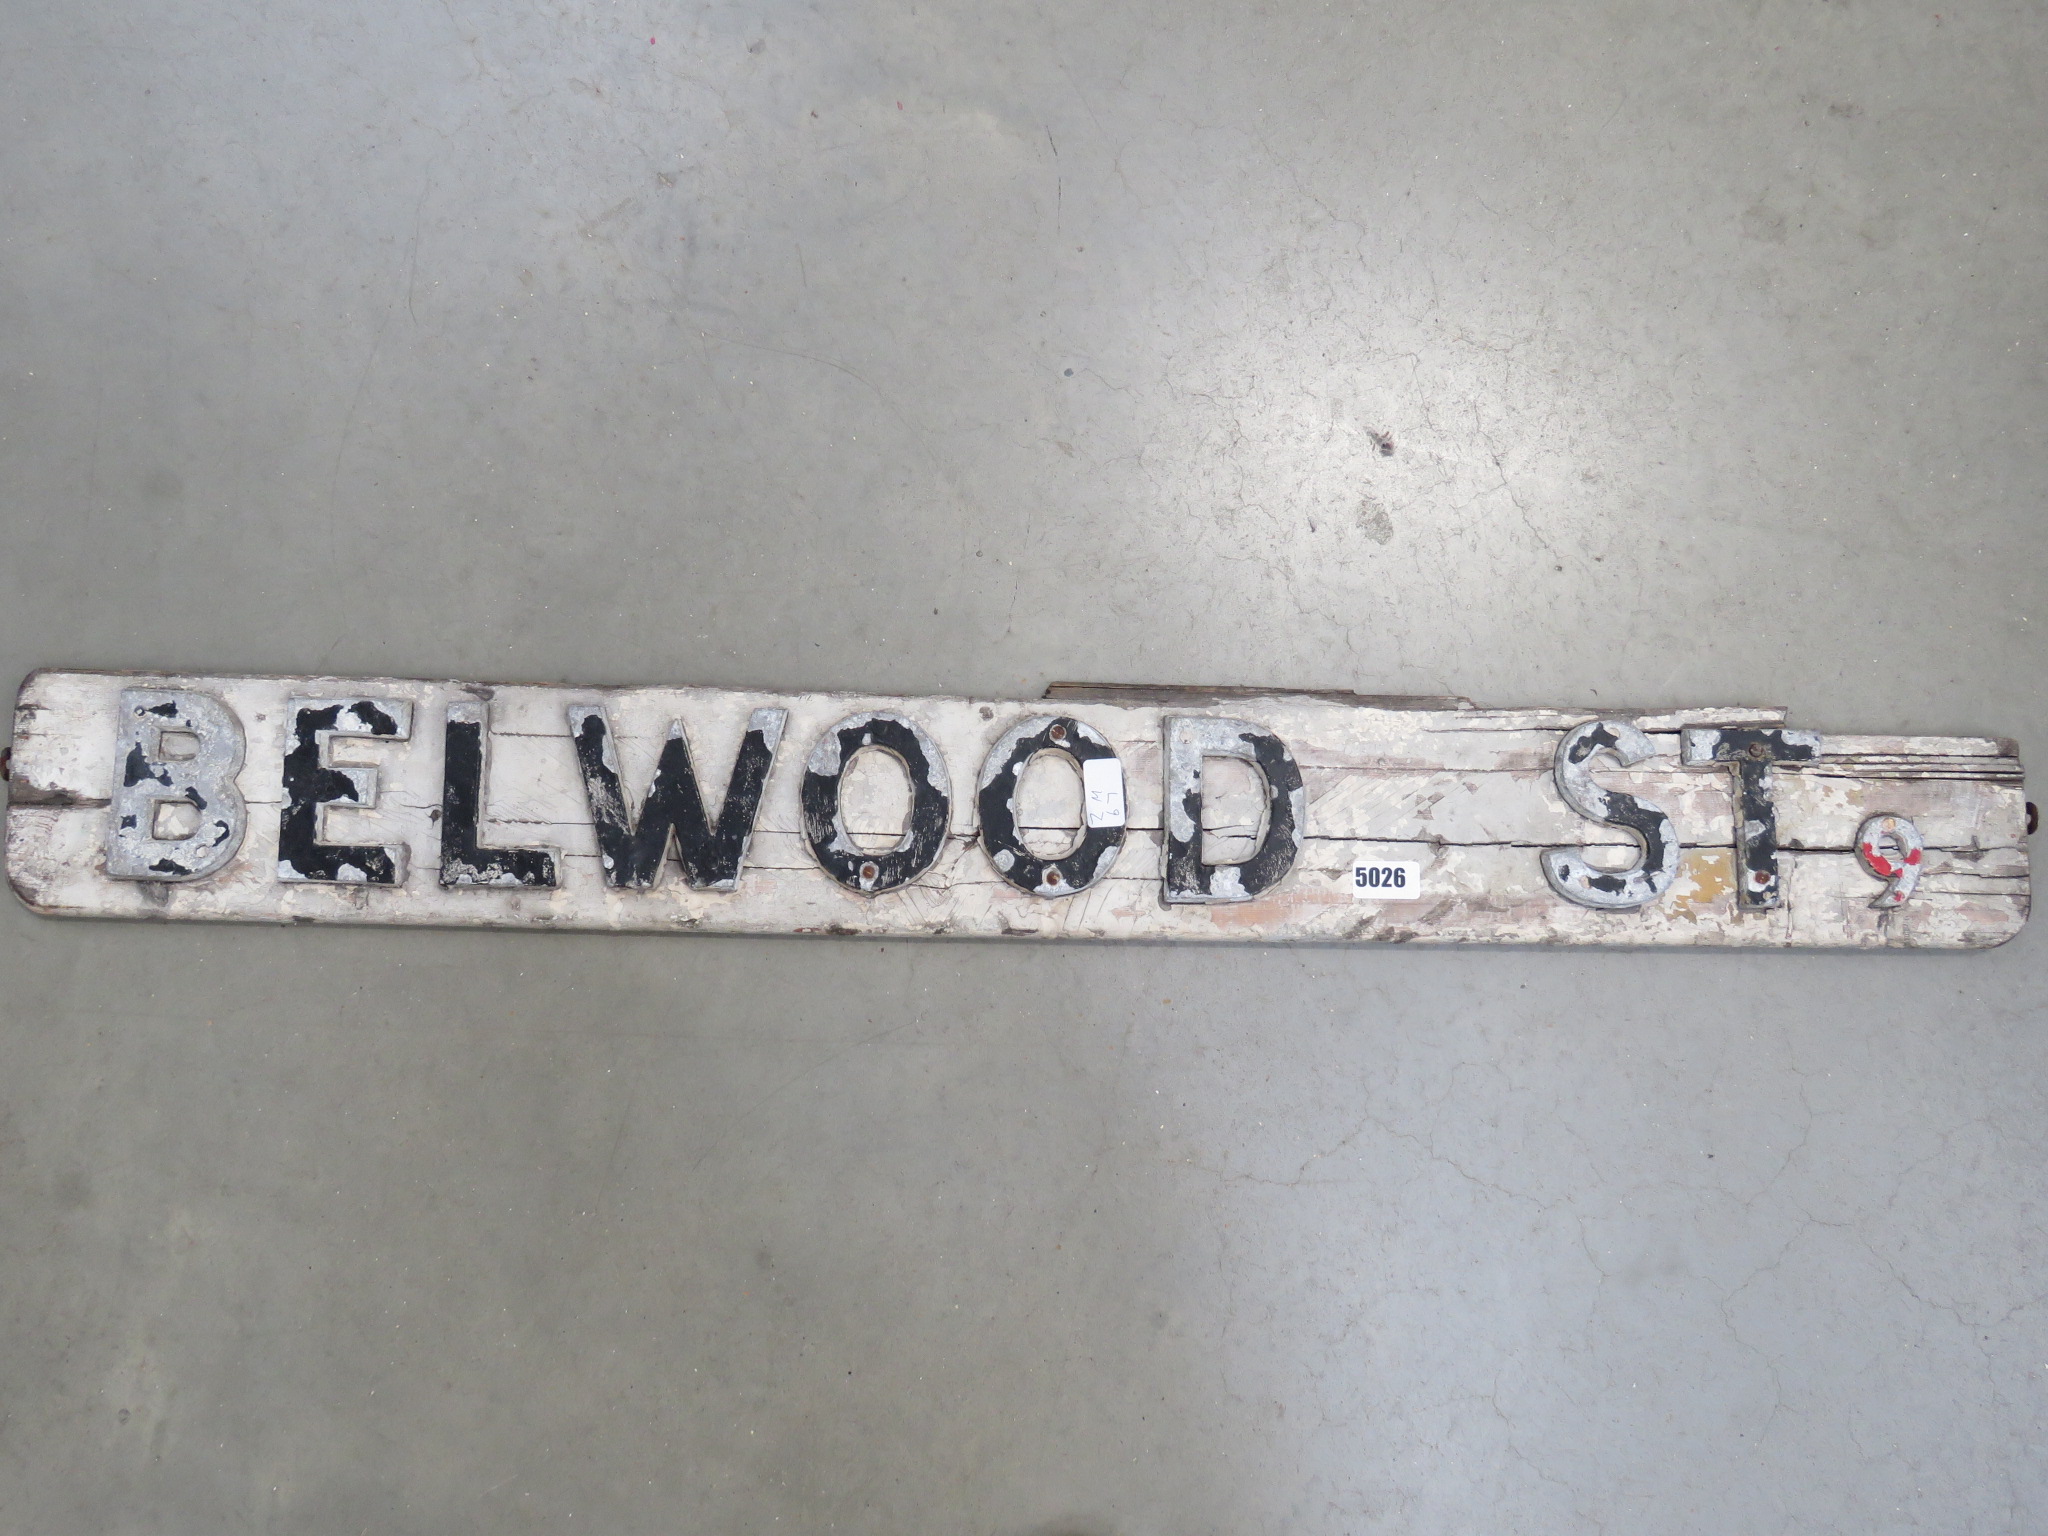 5188 Vintage sign for Bellwood Street